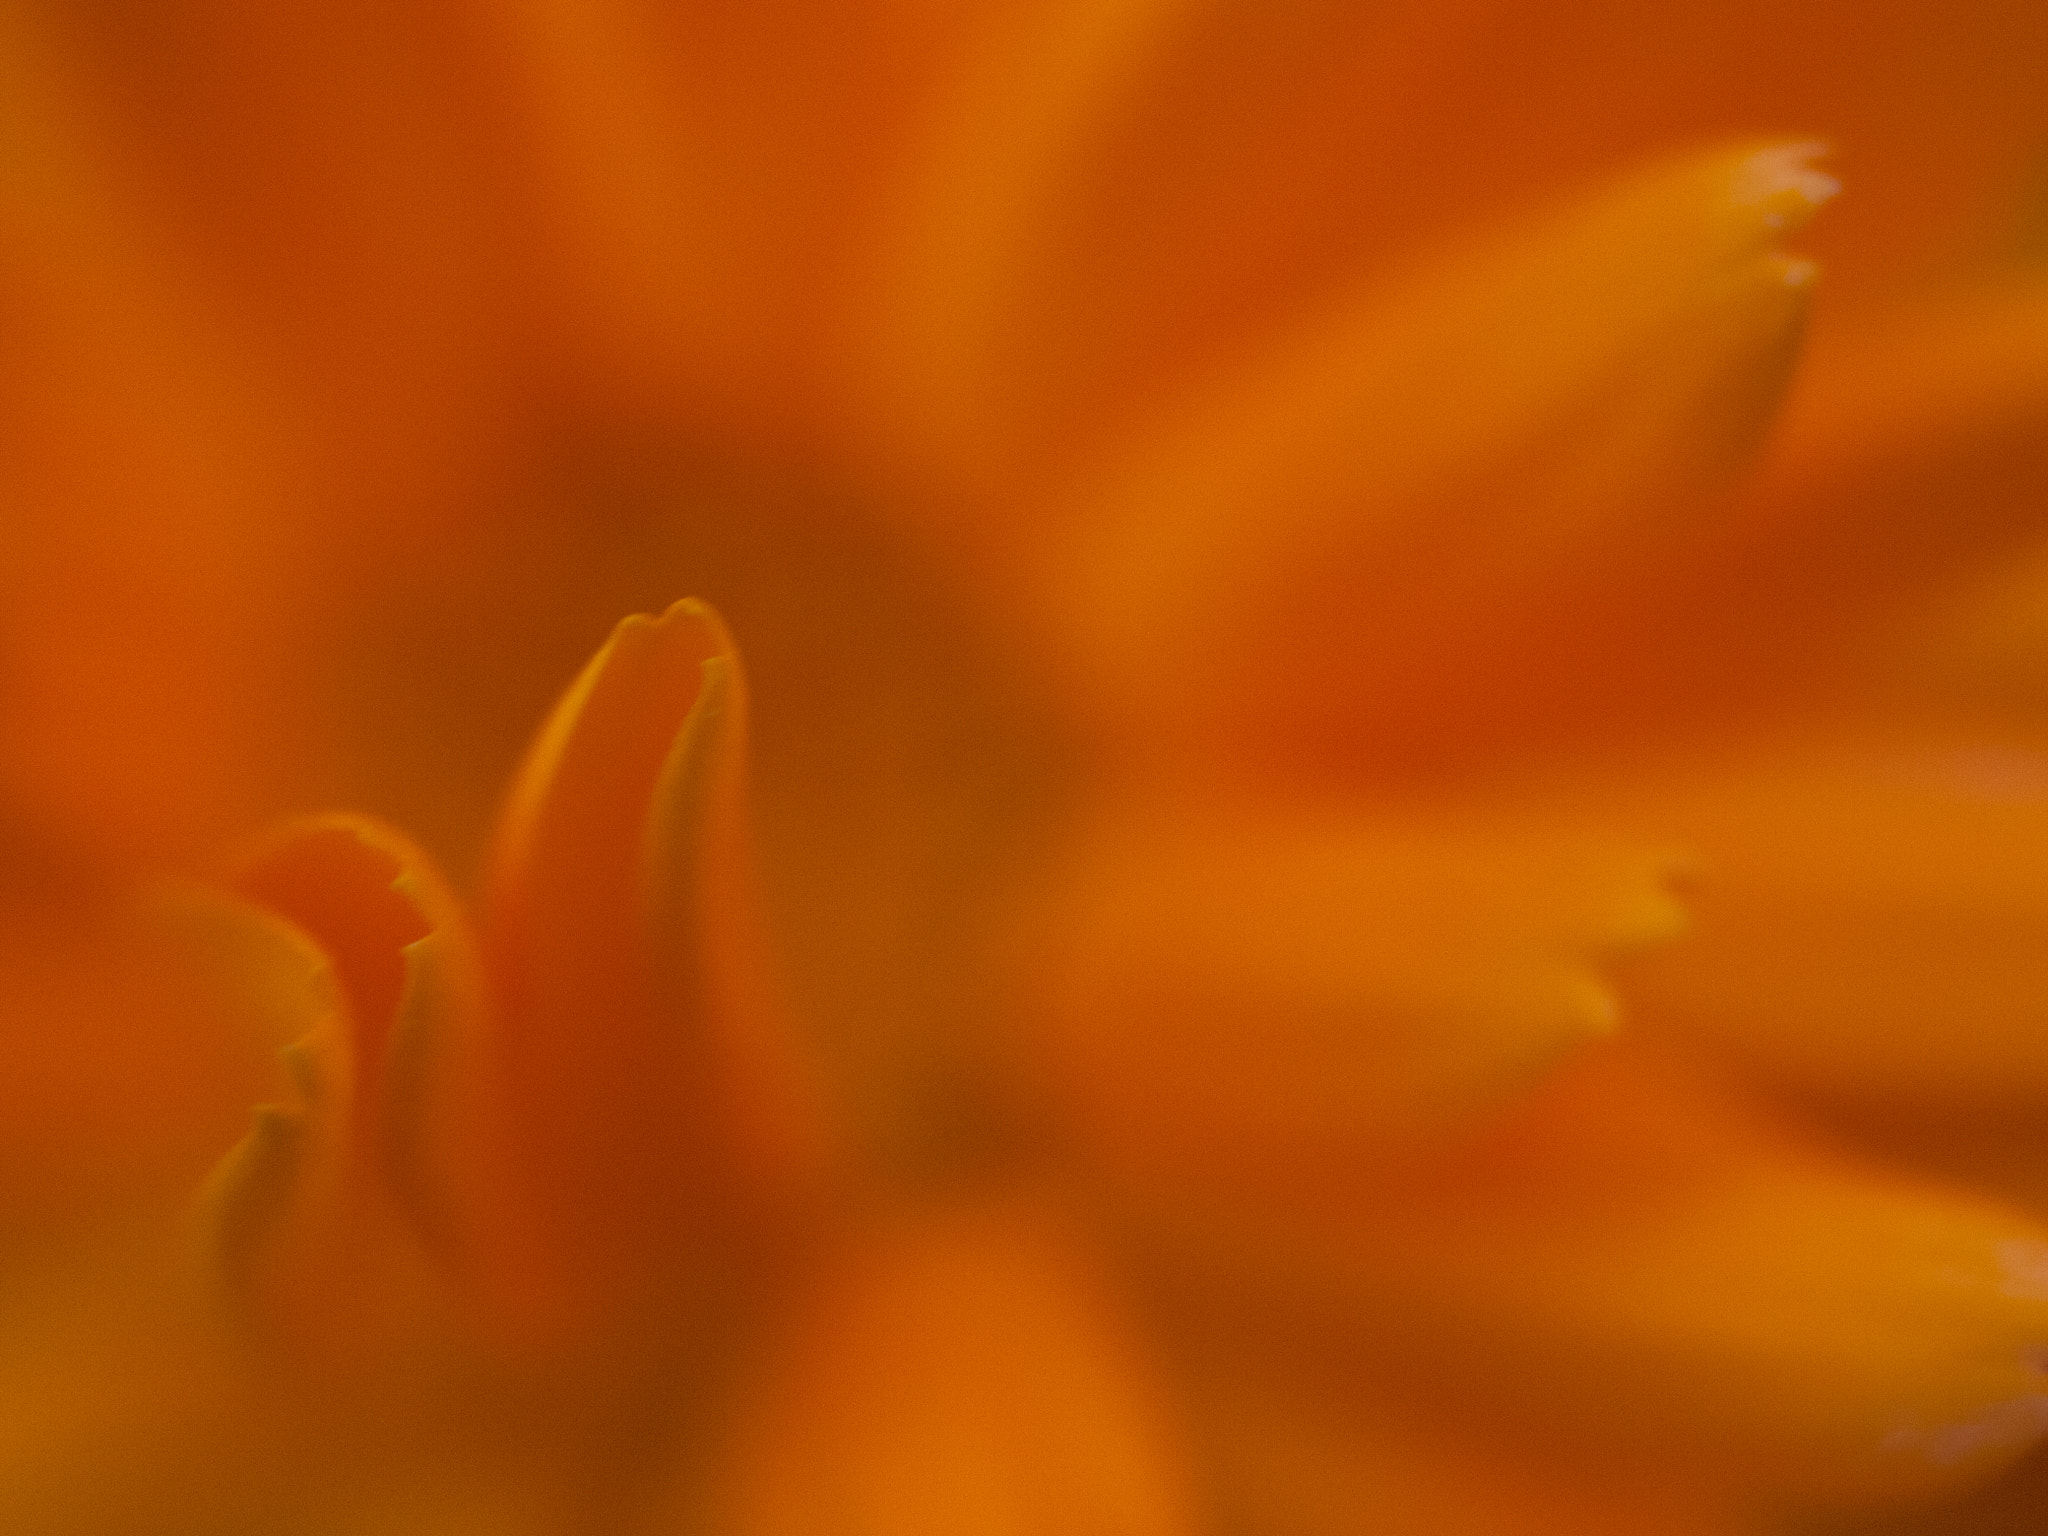 Olympus E-30 sample photo. Orange flower photography